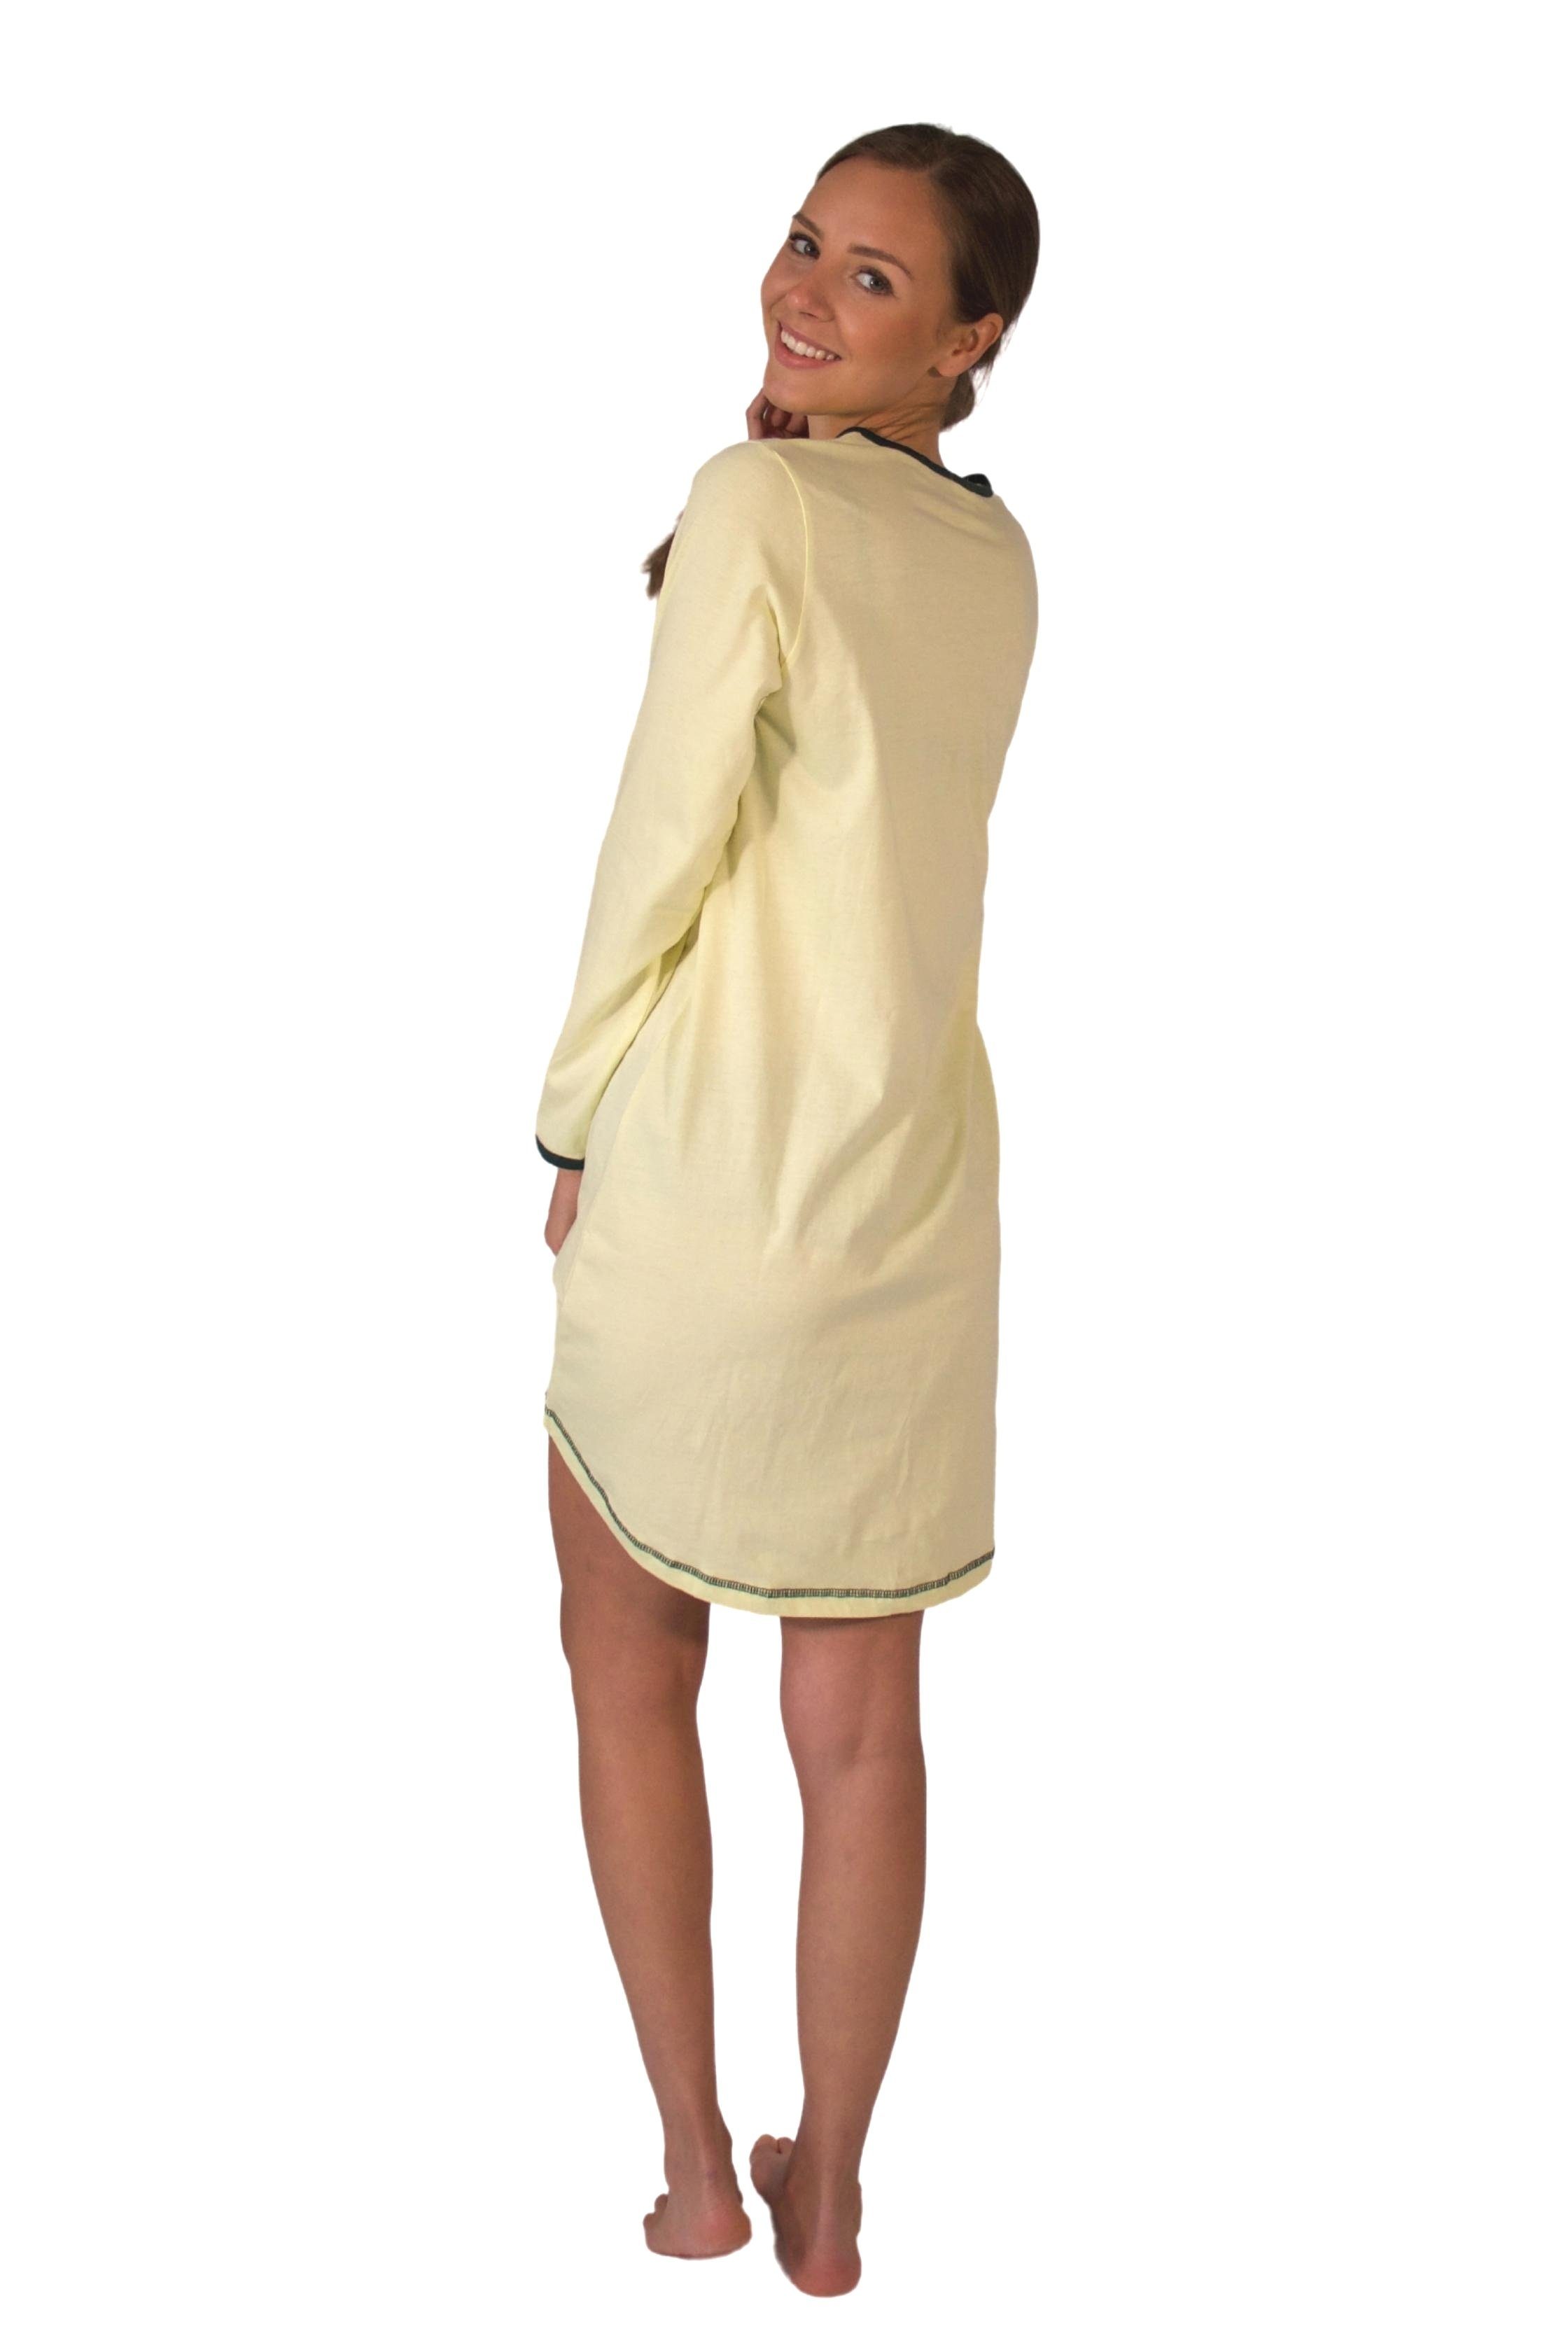 Consult-Tex Nachthemd Damen BaumwolleJersey Nachthemd DW720 bequem mingrün tragen zu